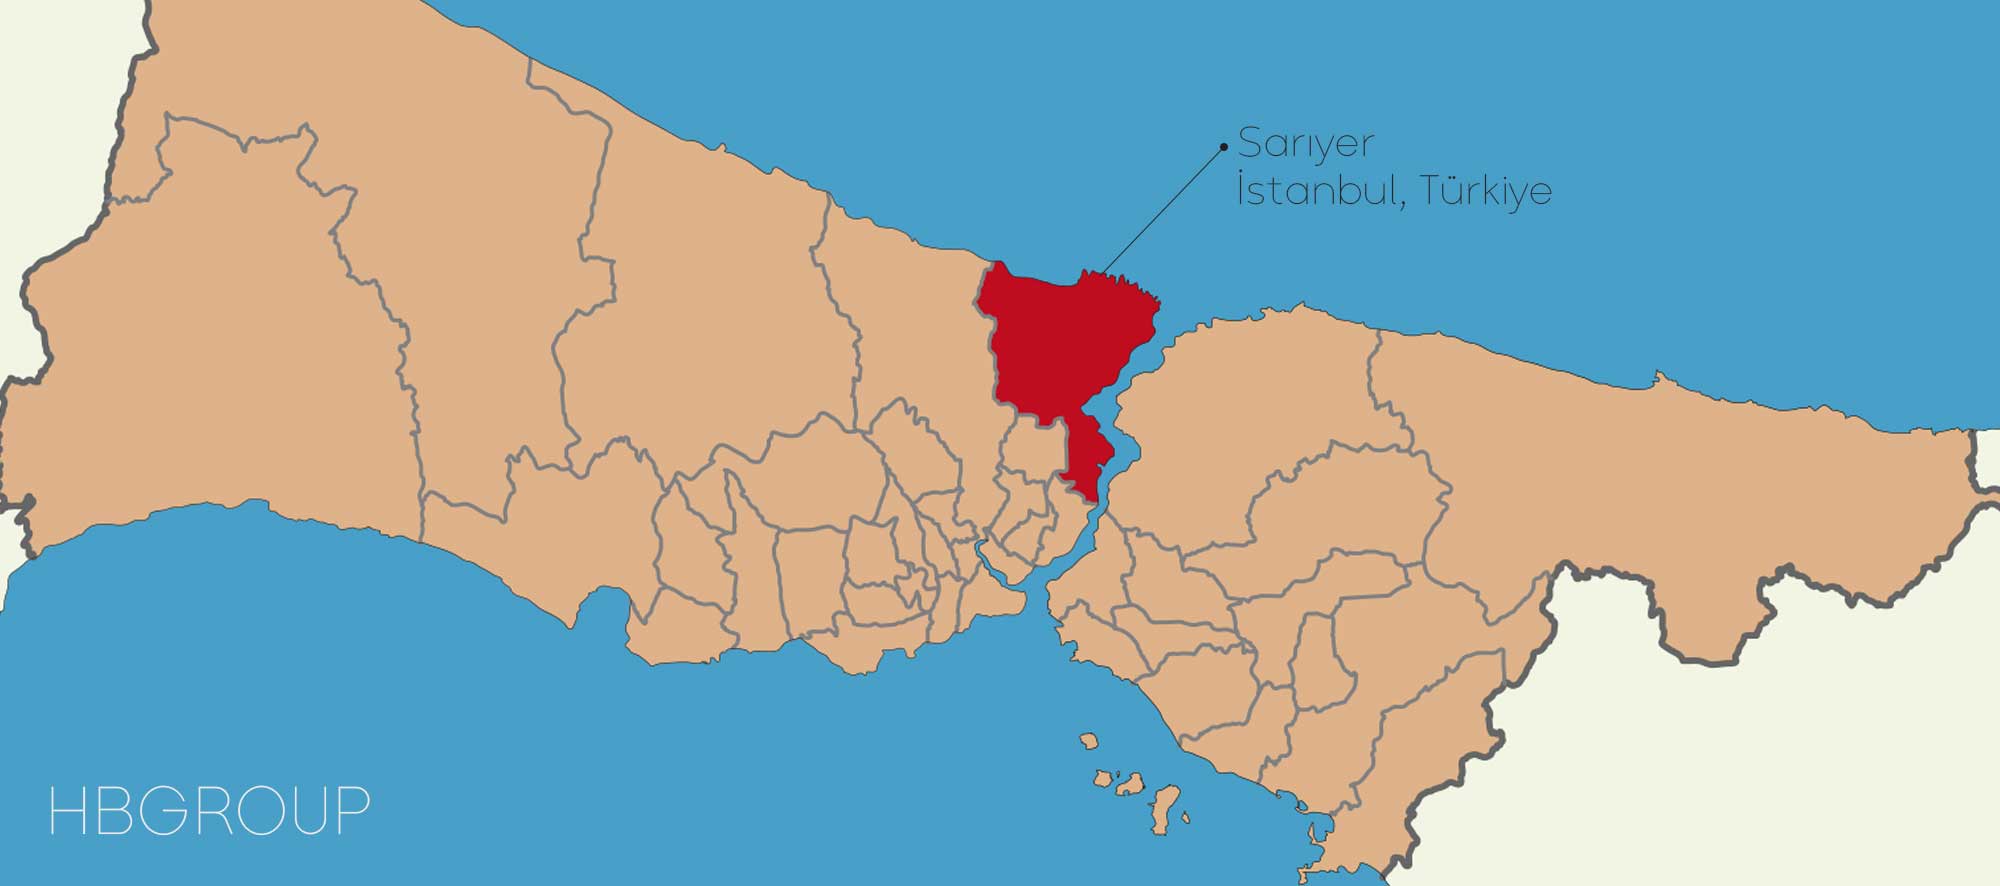 نقشه منطقه ساریر استانبول